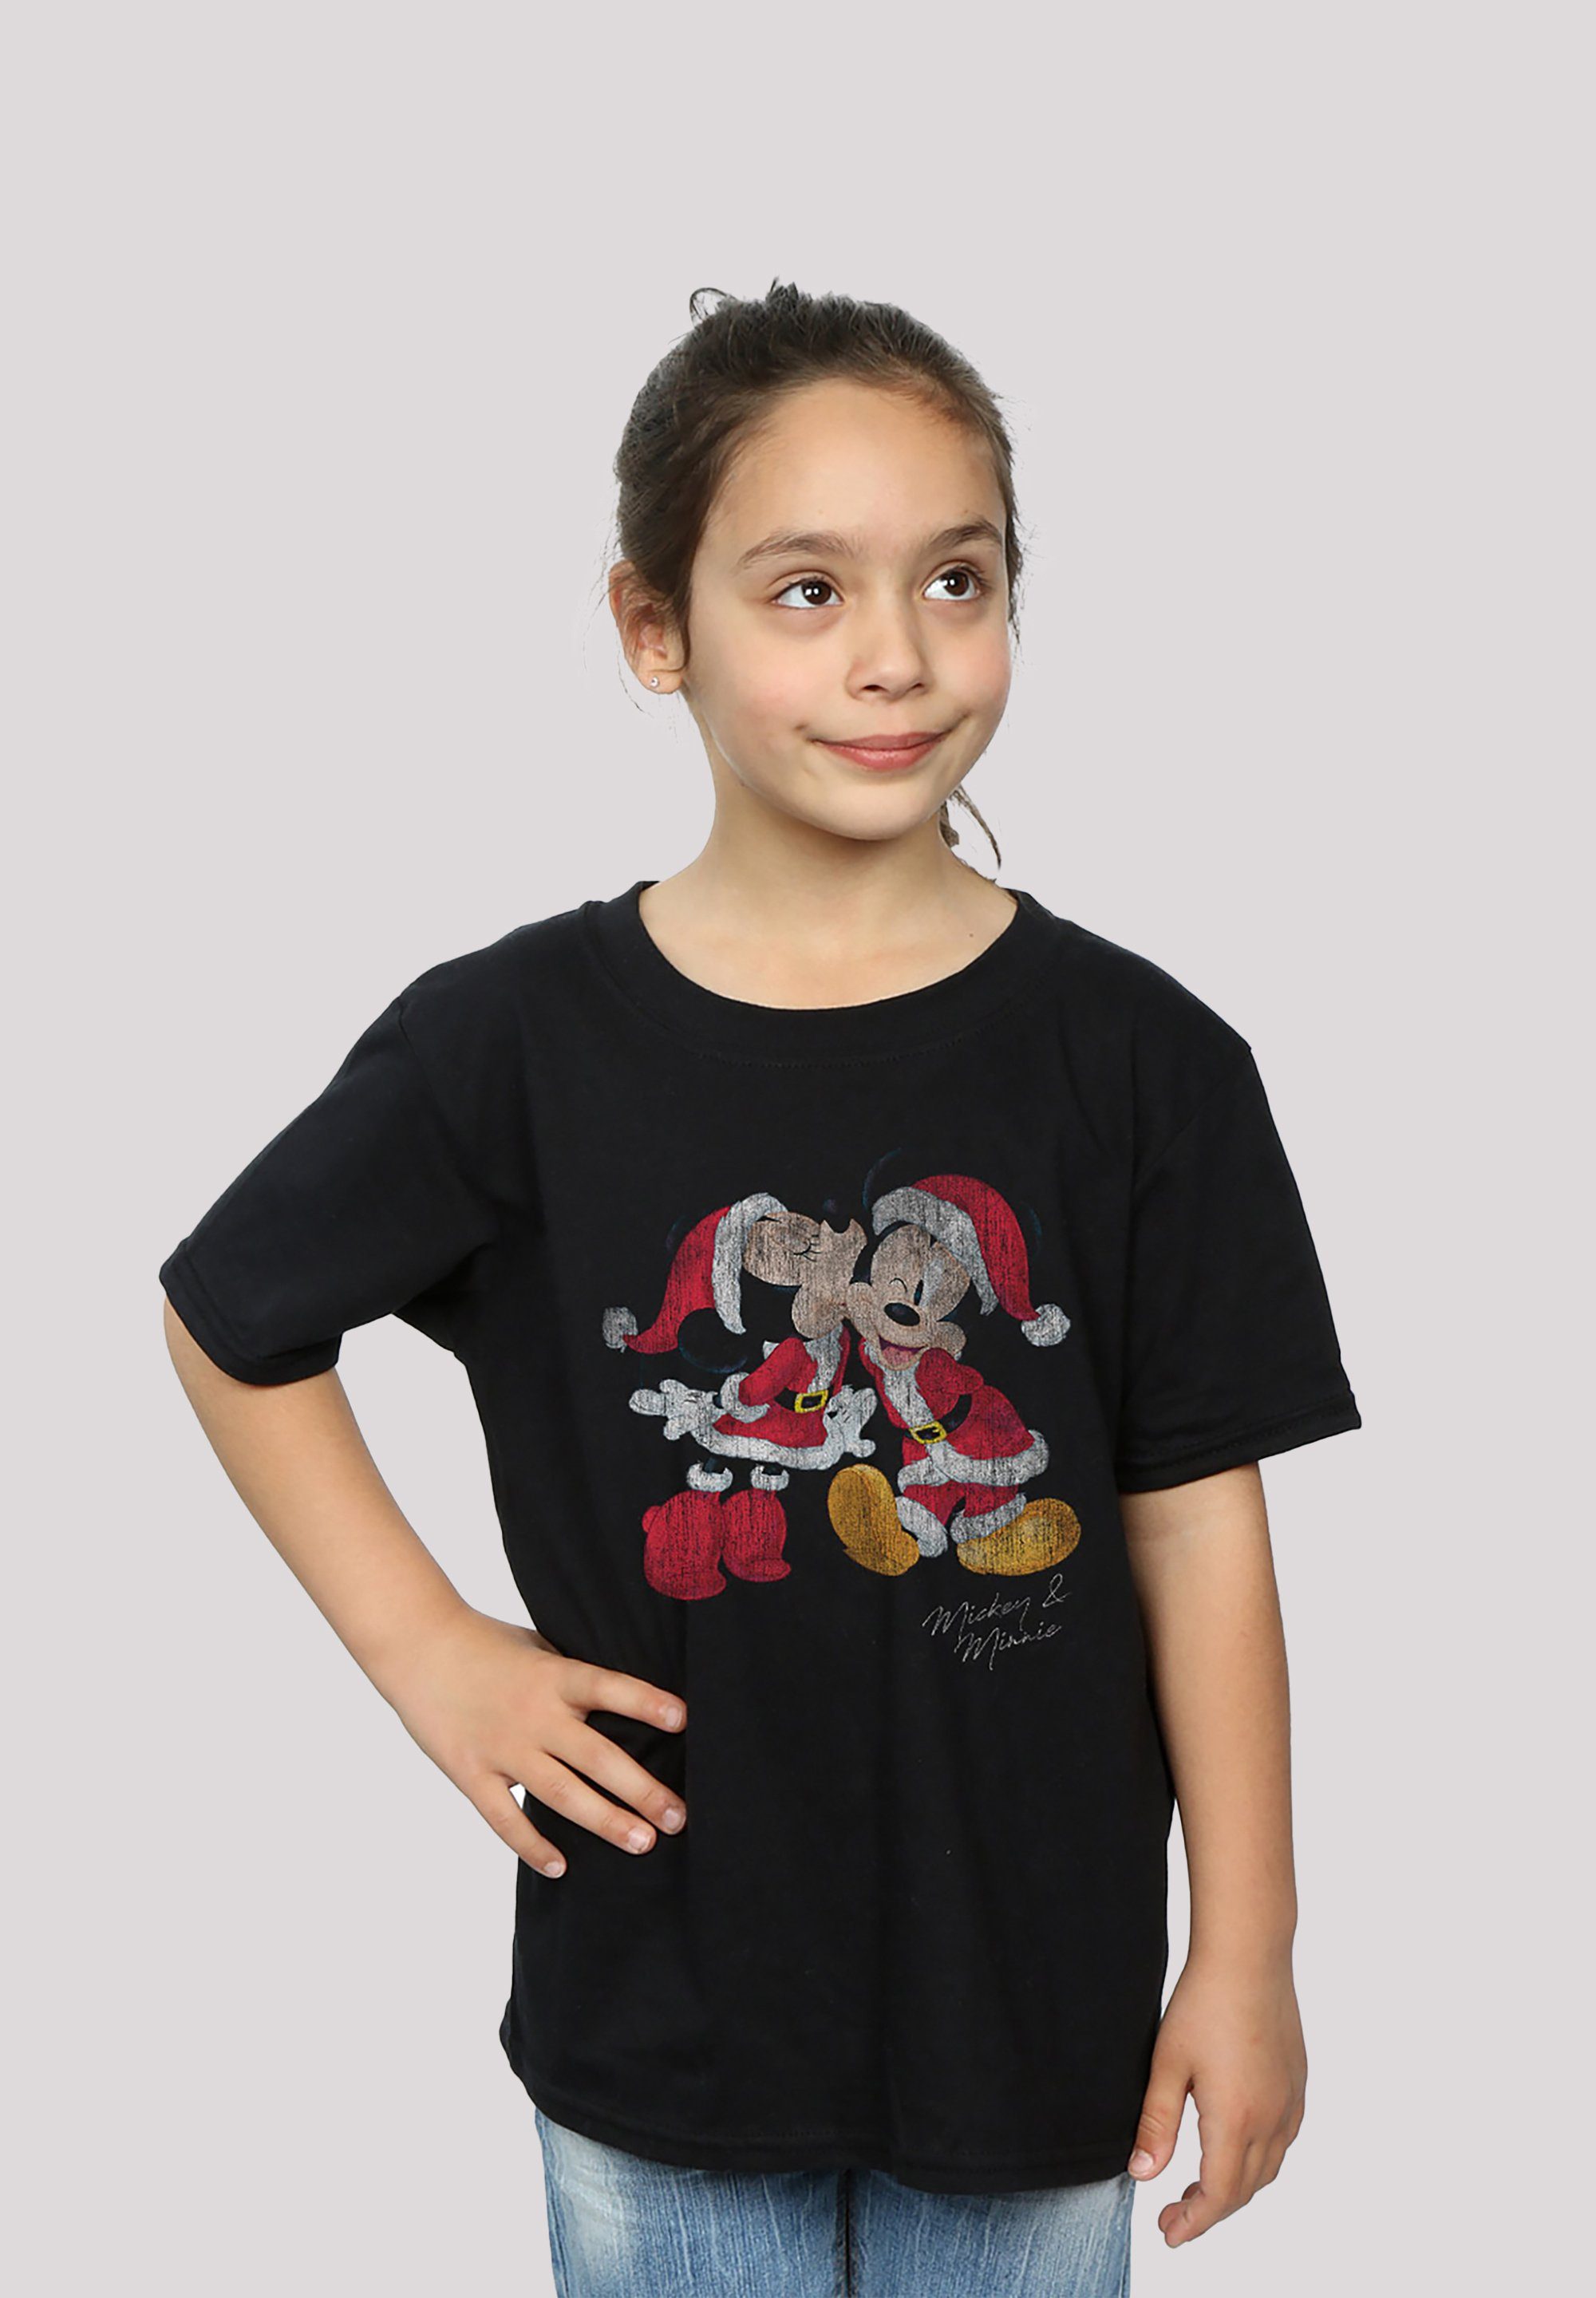 F4NT4STIC T-Shirt Print Weihnachten & Disney Micky Minnie